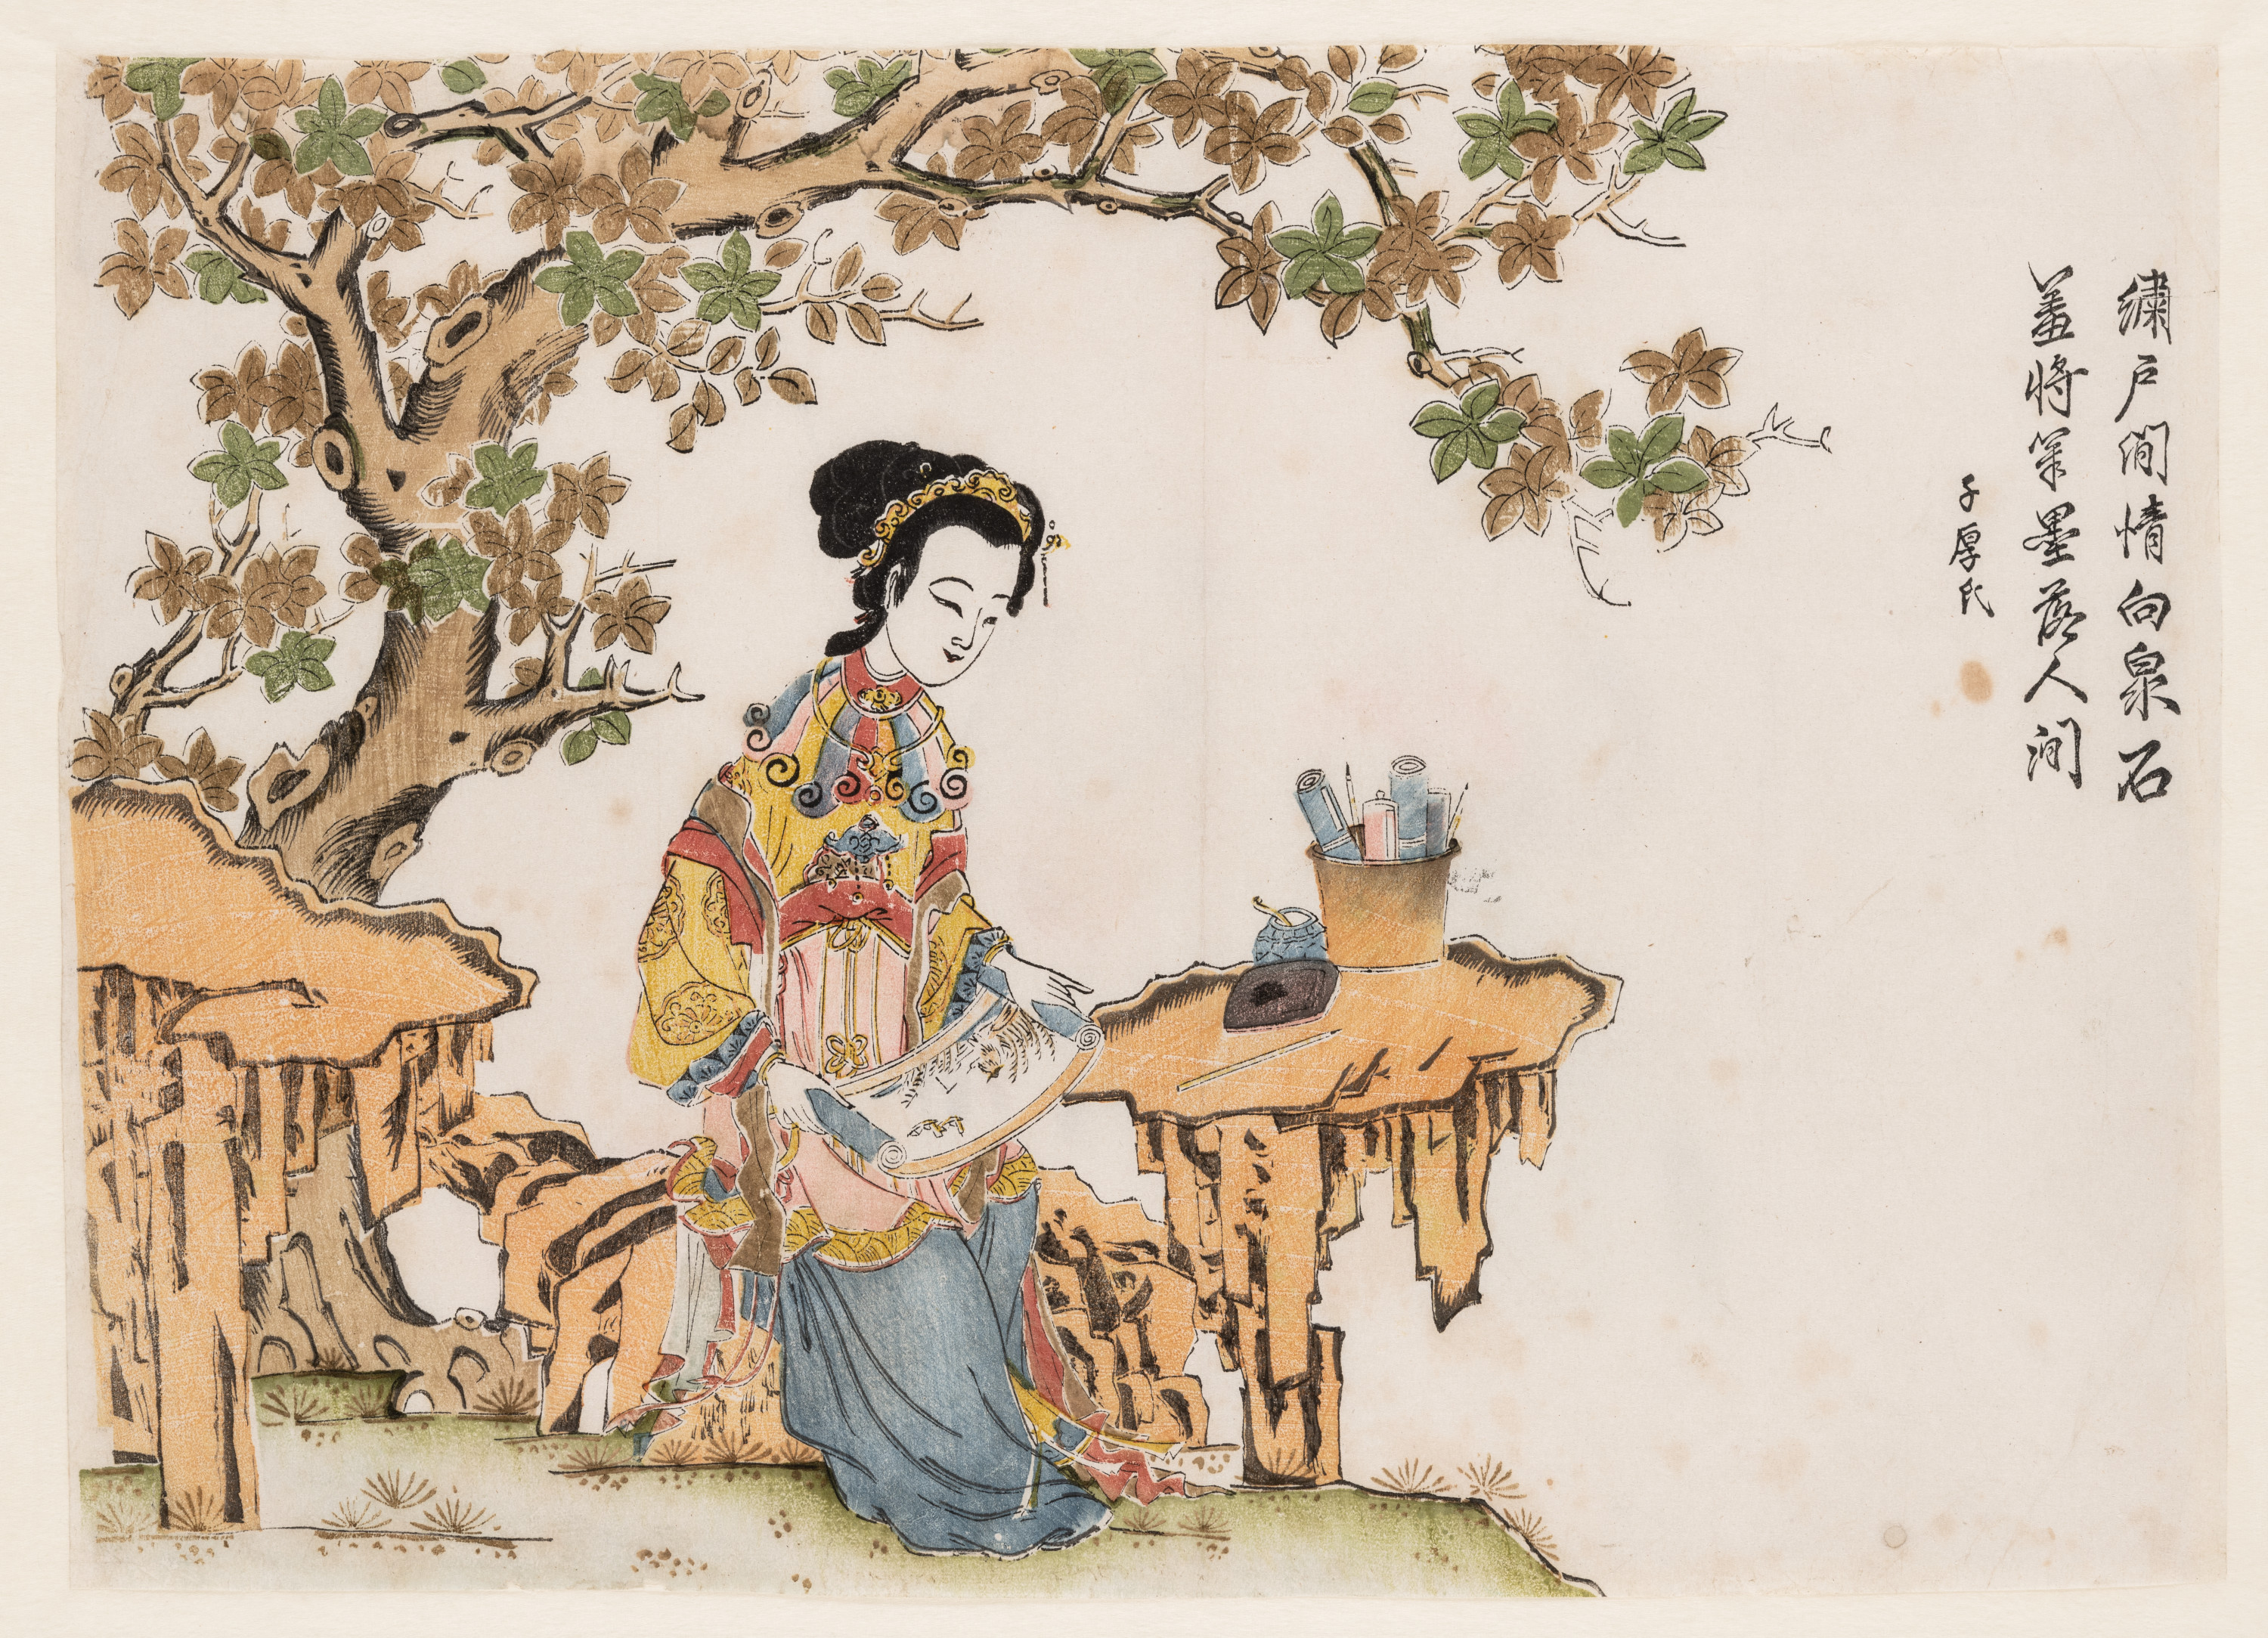 Unbekannt, Chinesisch, Eine Zeichnerin unter einem Baum, Suzhou, um 1650–80